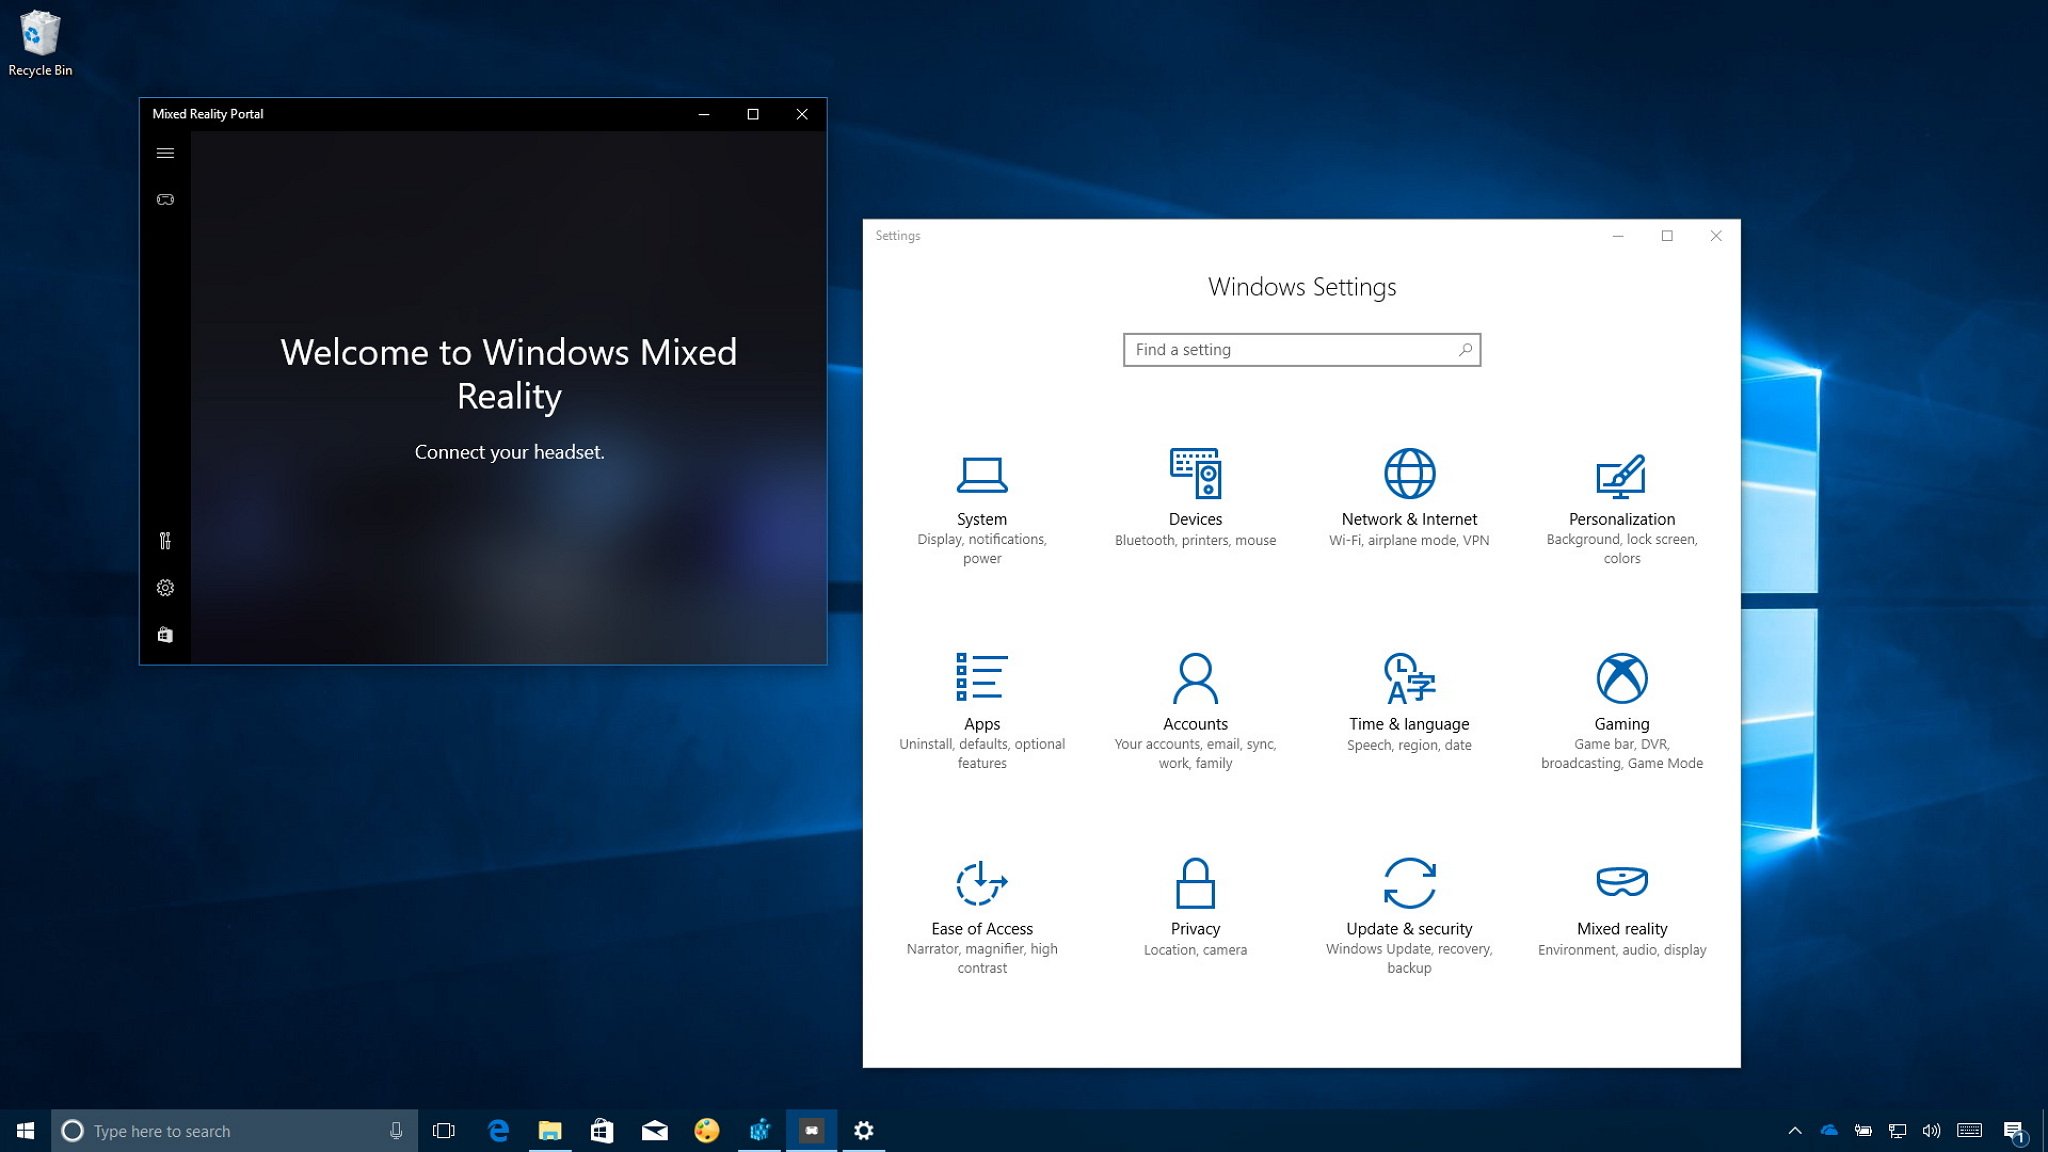 Windows mr. Виндовс смешанная реальность. Портал смешанной реальности Windows. Портал смешанной реальности в Windows 10 что это. Windows Mix reality смешанная реальность.